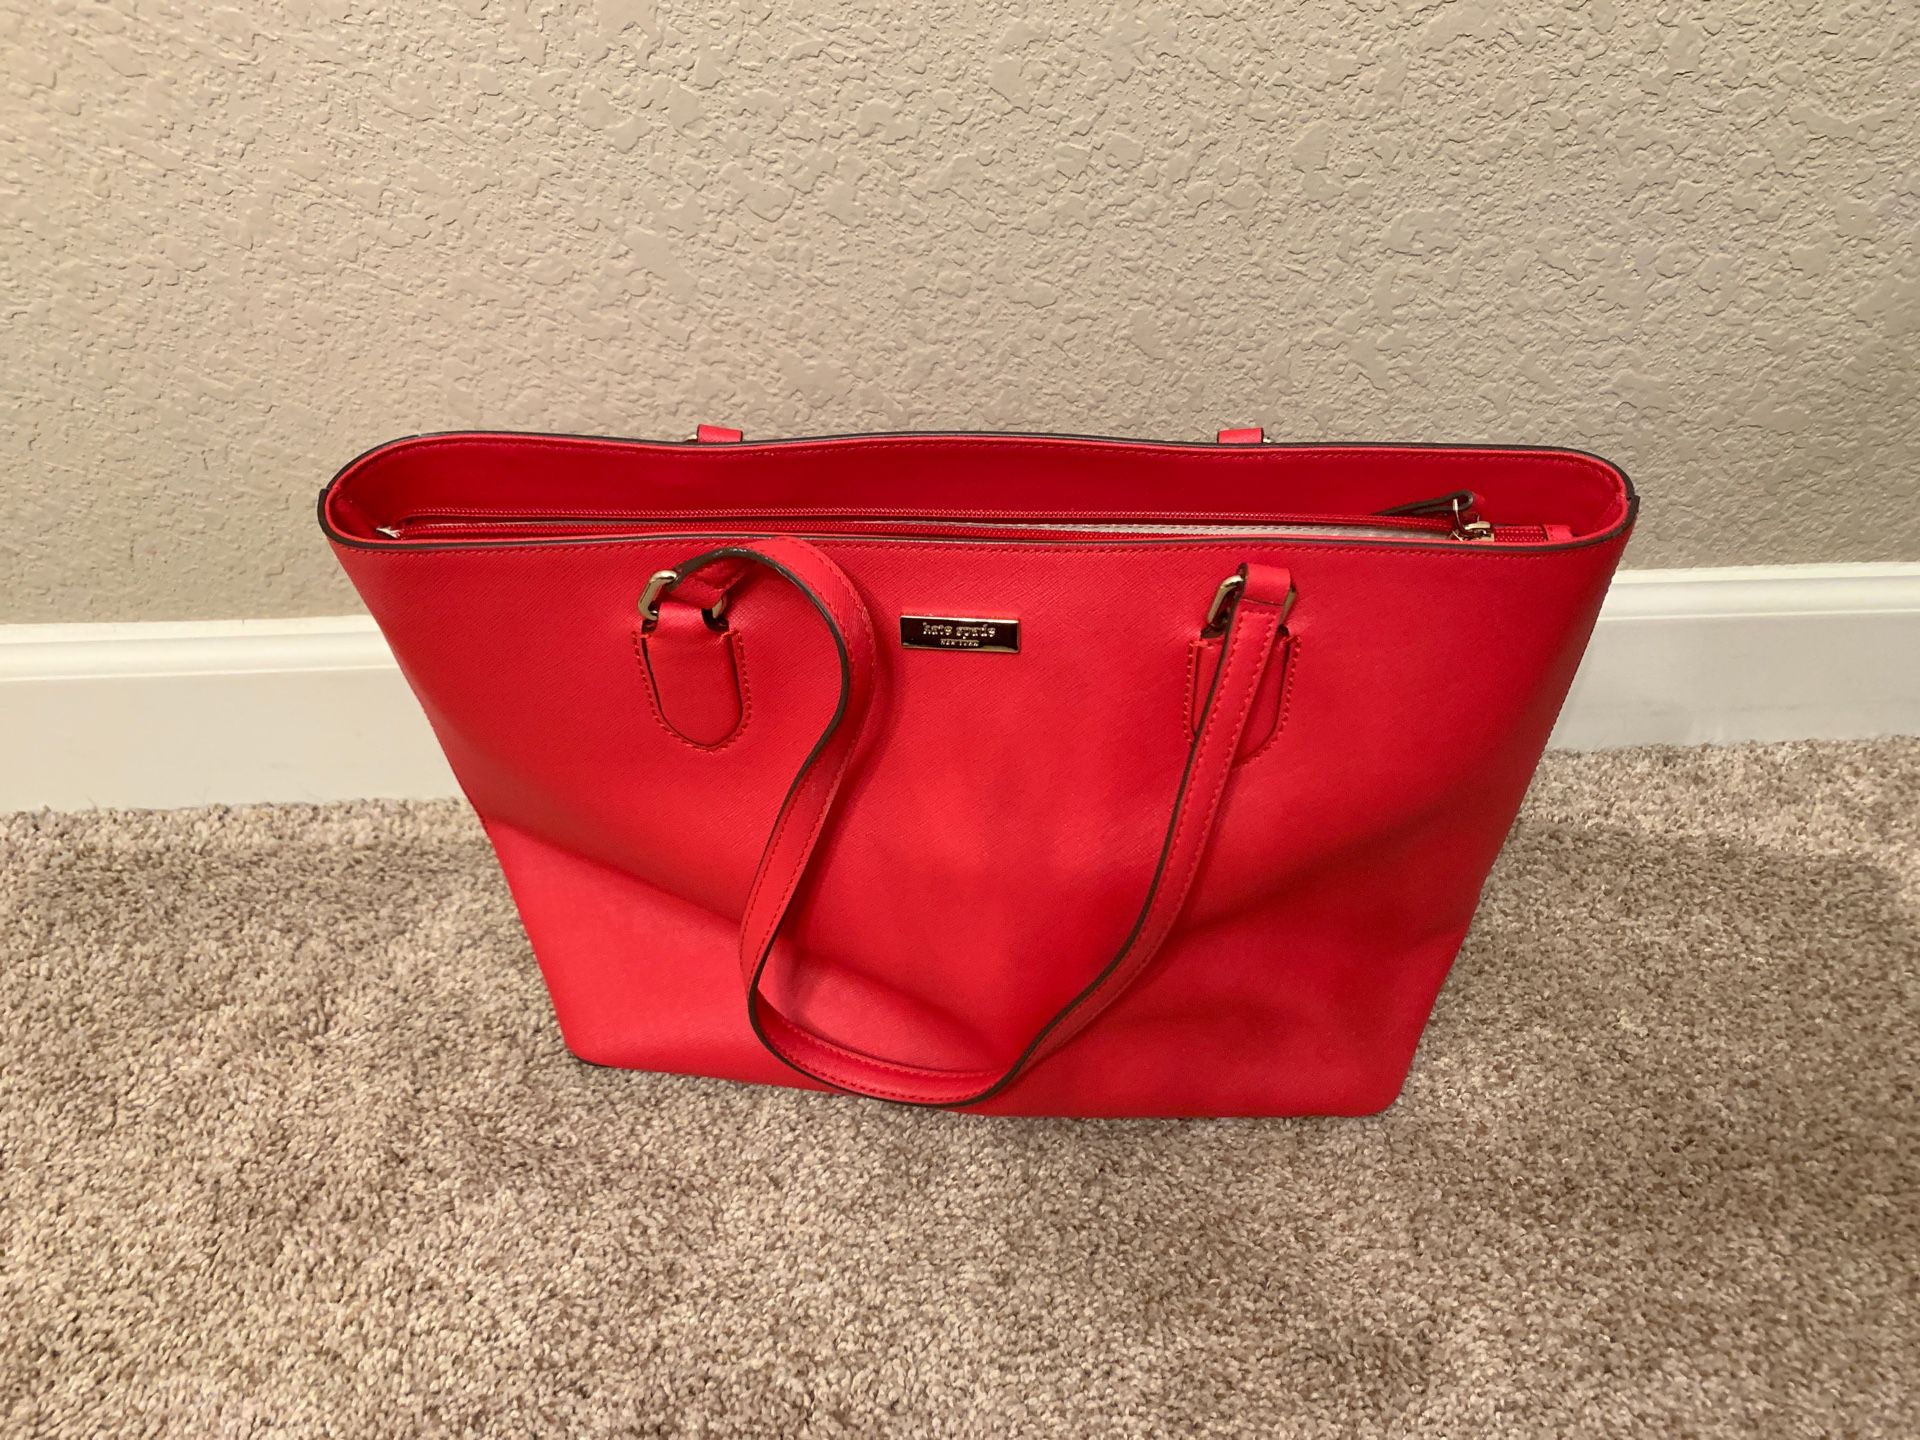 Red Kate Spade laptop bag